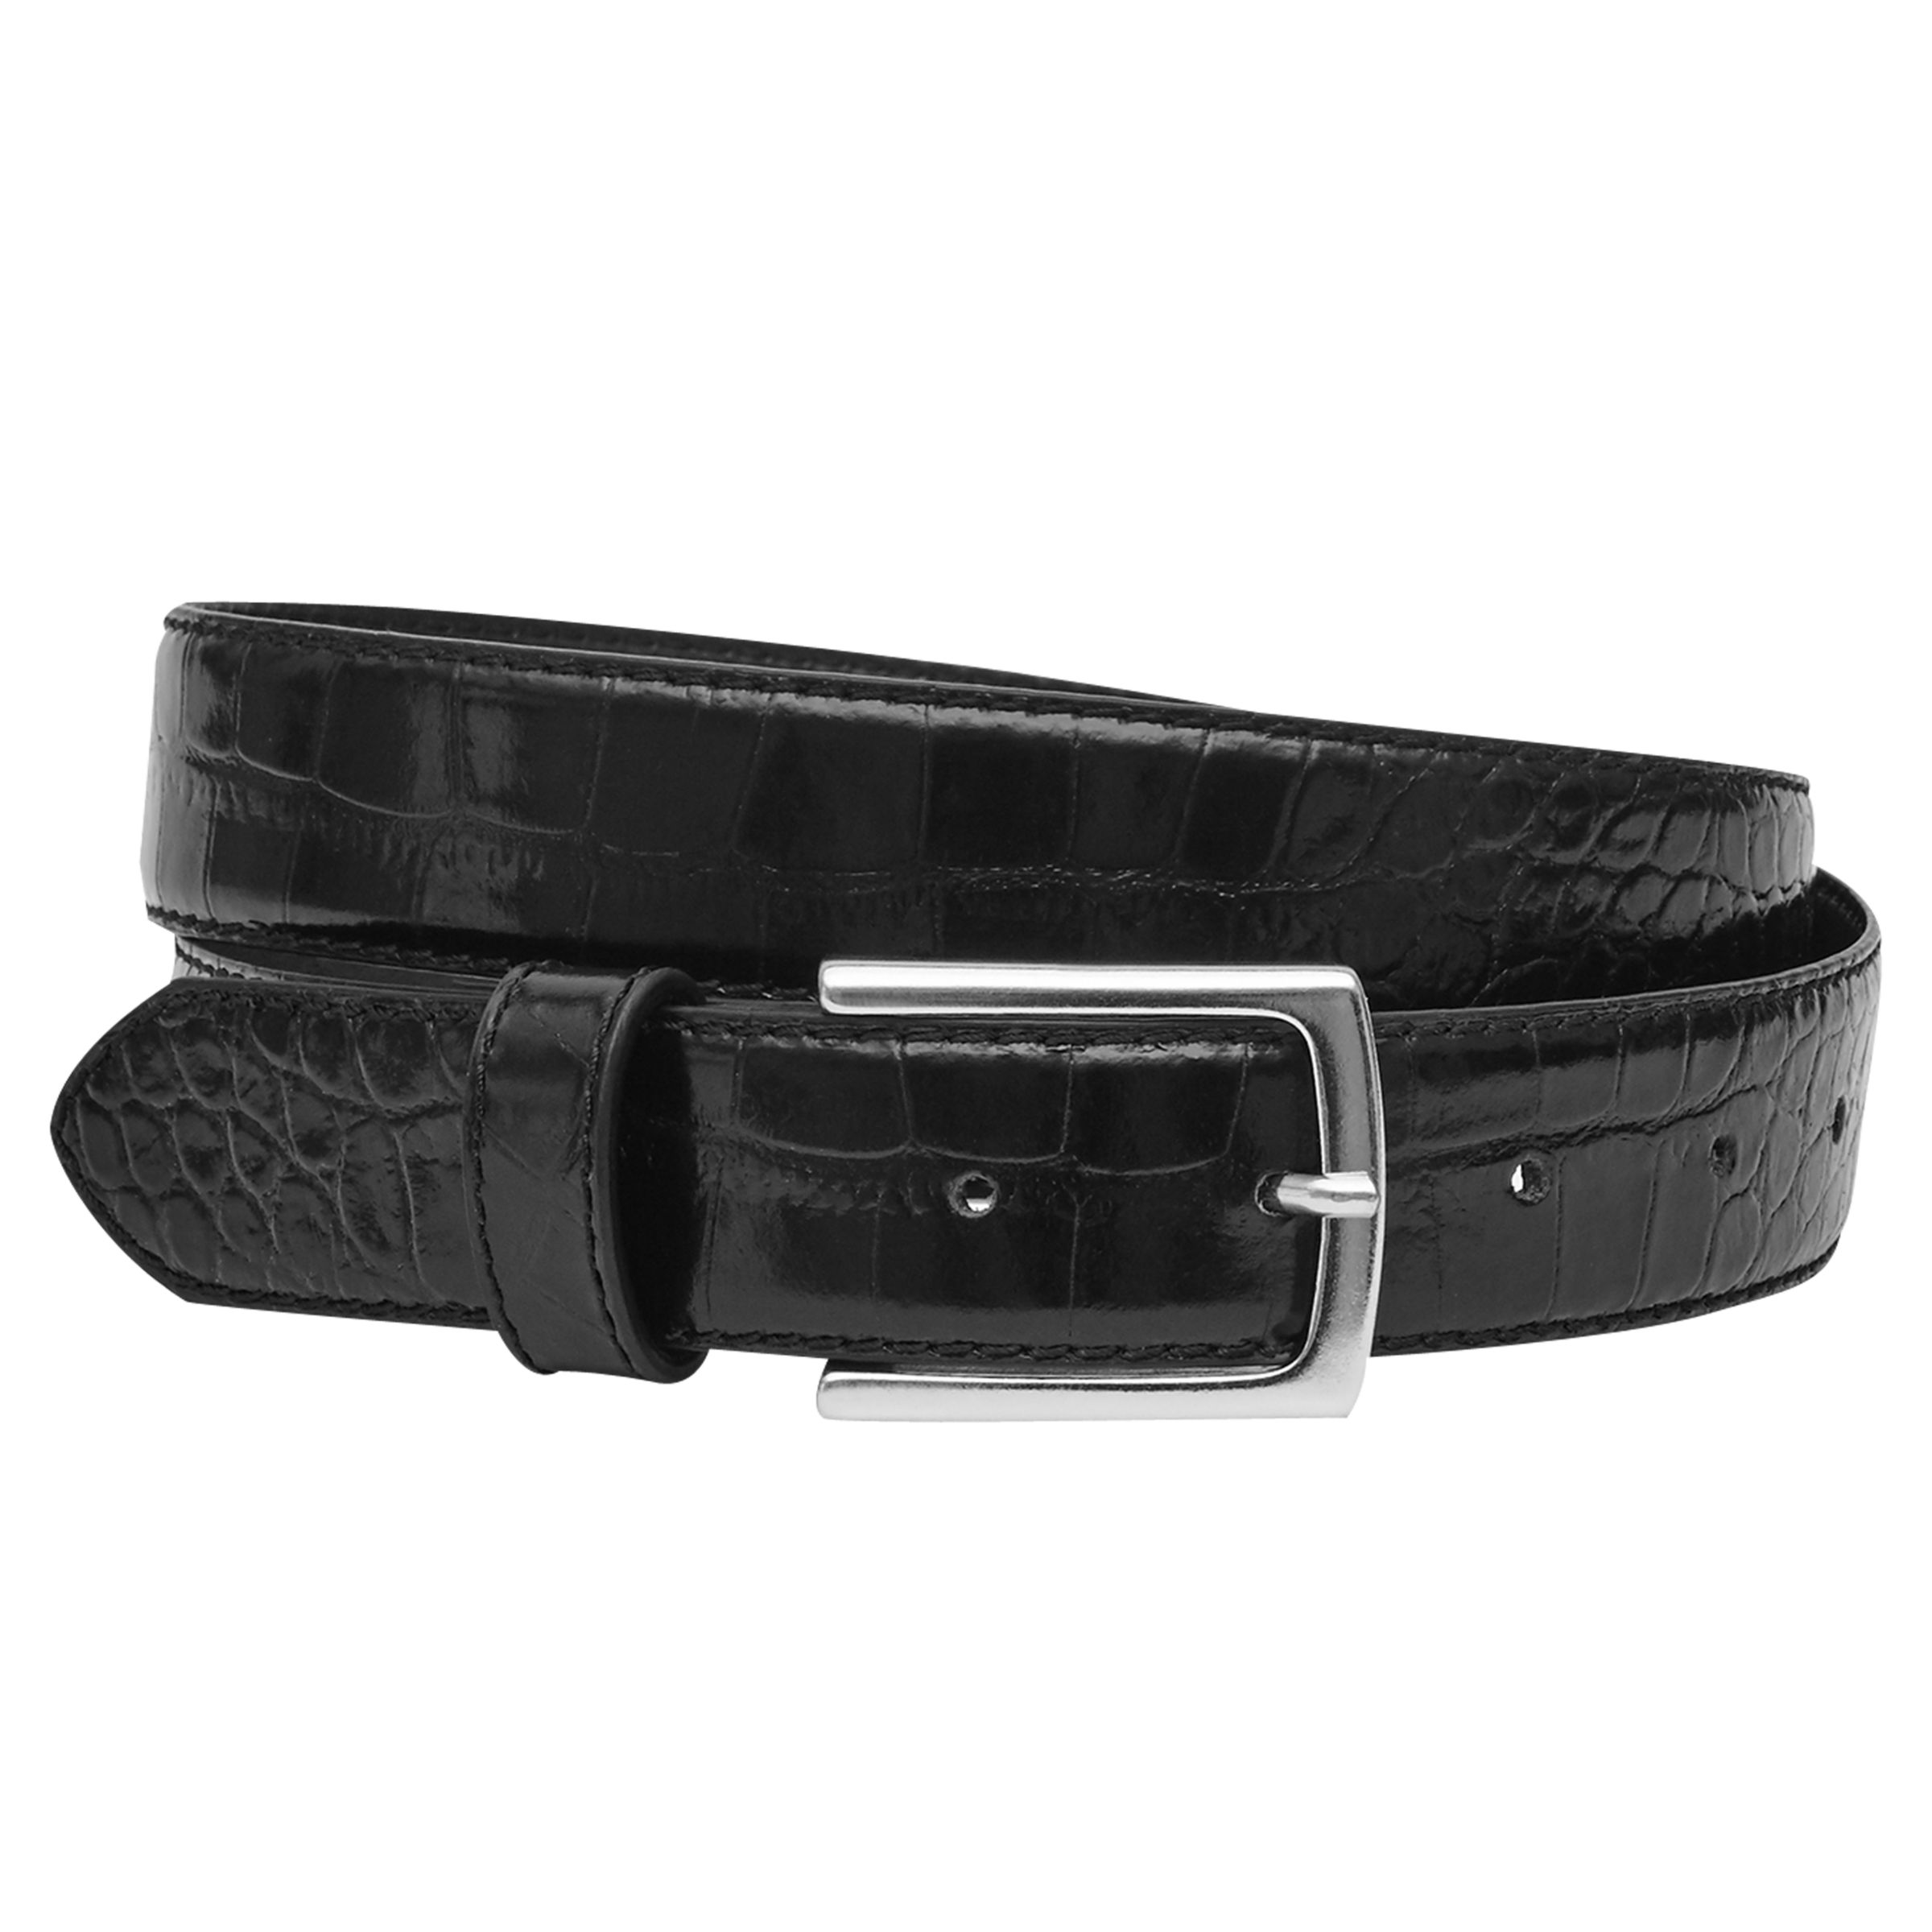 Reiss Roller Croc-Patterned Belt, Black, 34